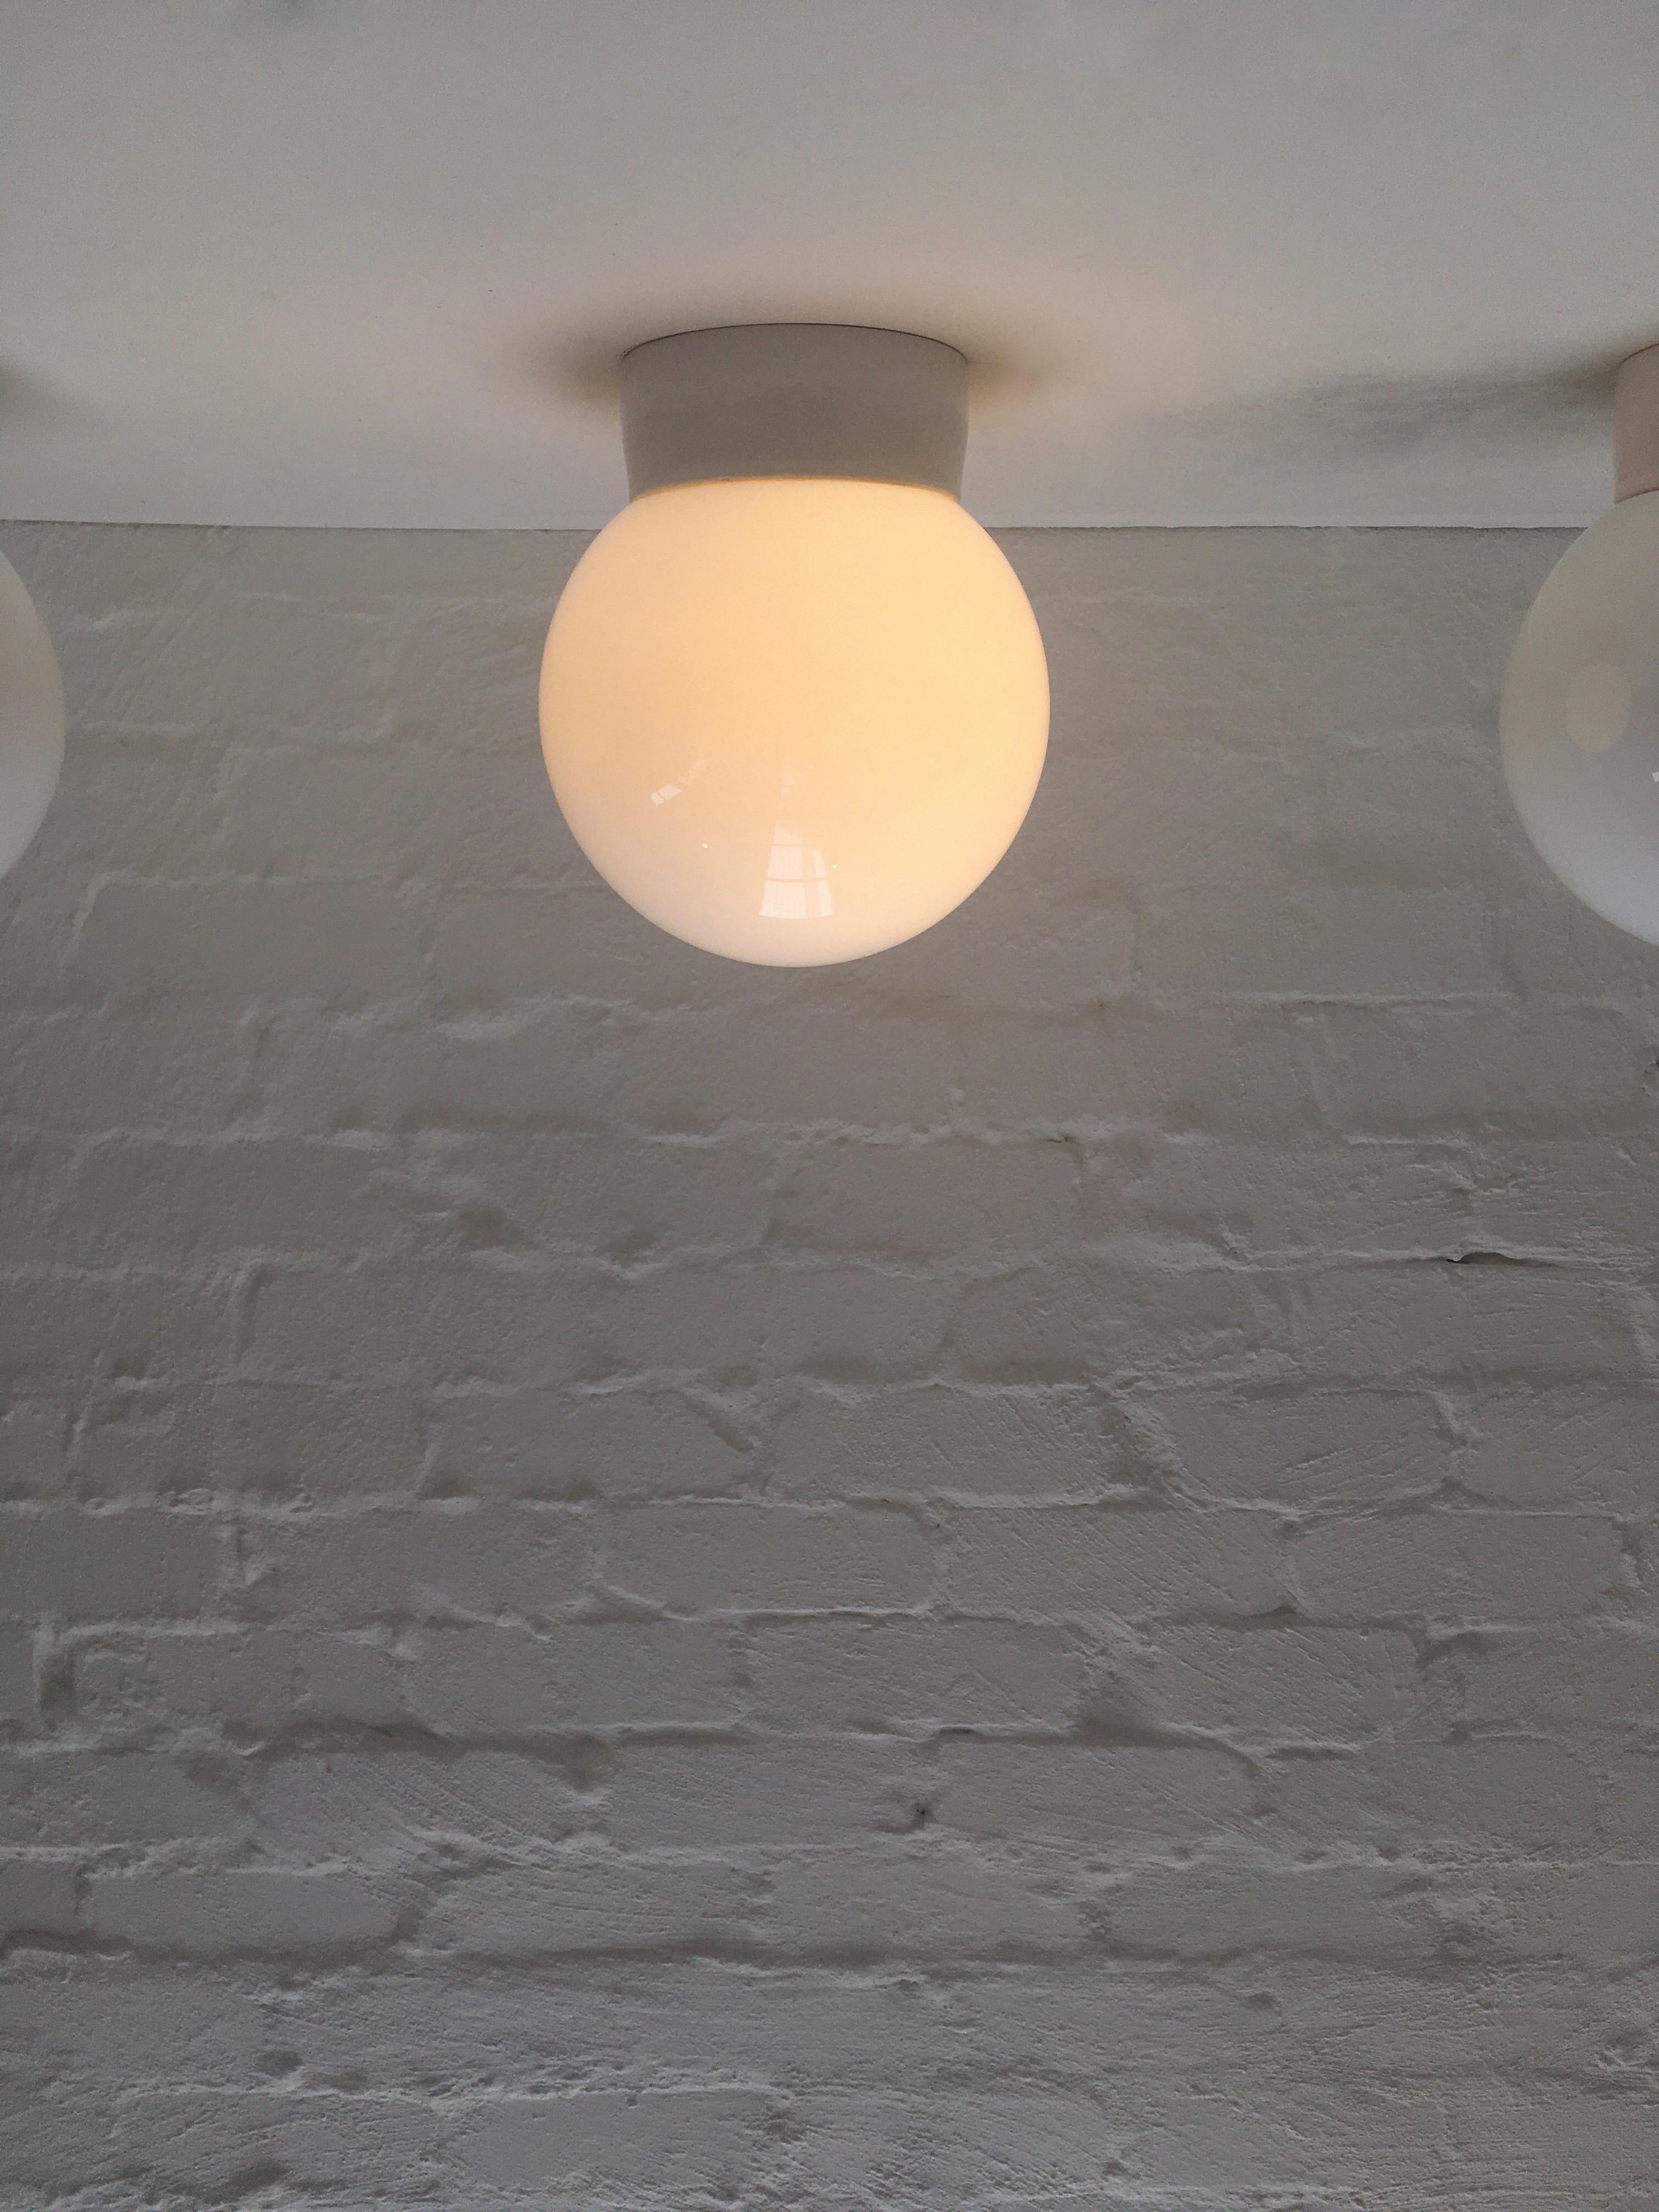 spherical ceiling light